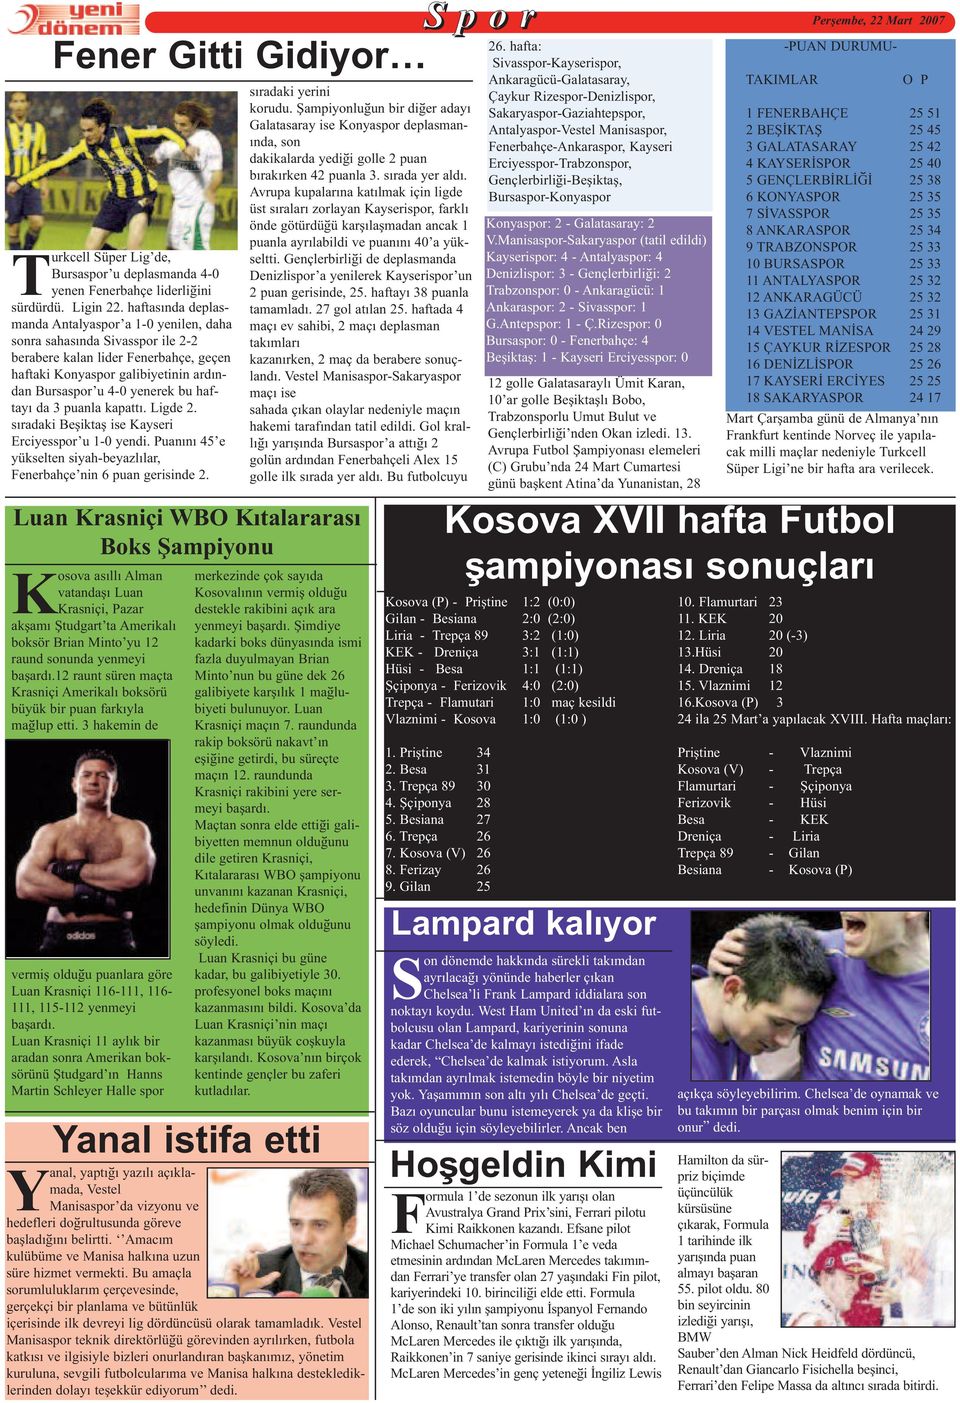 haftayý da 3 puanla kapattý. Ligde 2. sýradaki Beþiktaþ ise Kayseri Erciyesspor u 1-0 yendi. Puanýný 45 e yükselten siyah-beyazlýlar, Fenerbahçe nin 6 puan gerisinde 2.